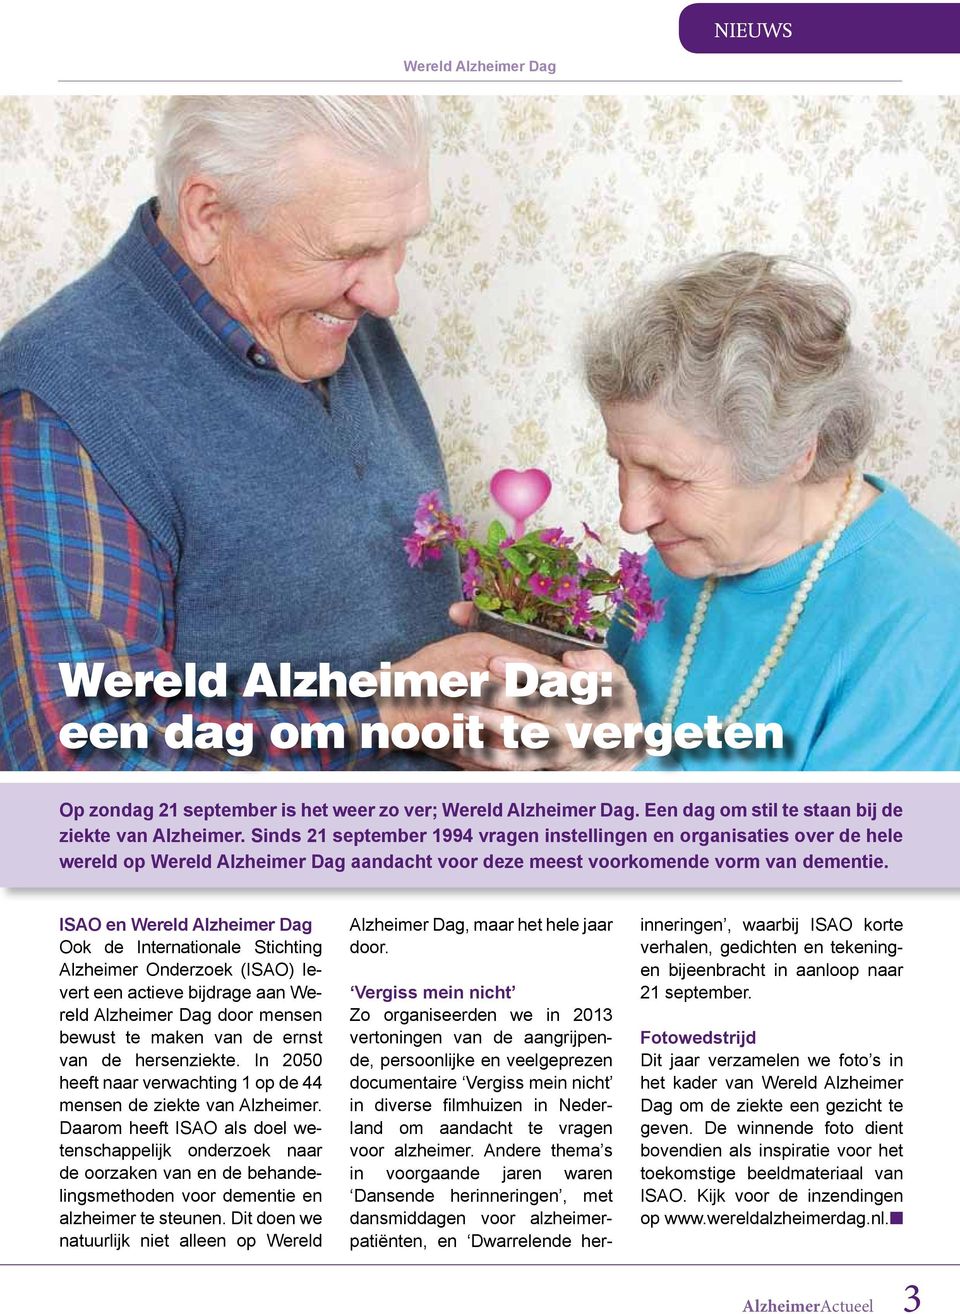 ISAO en Wereld Alzheimer Dag Ook de Internationale Stichting Alzheimer Onderzoek (ISAO) levert een actieve bijdrage aan Wereld Alzheimer Dag door mensen bewust te maken van de ernst van de